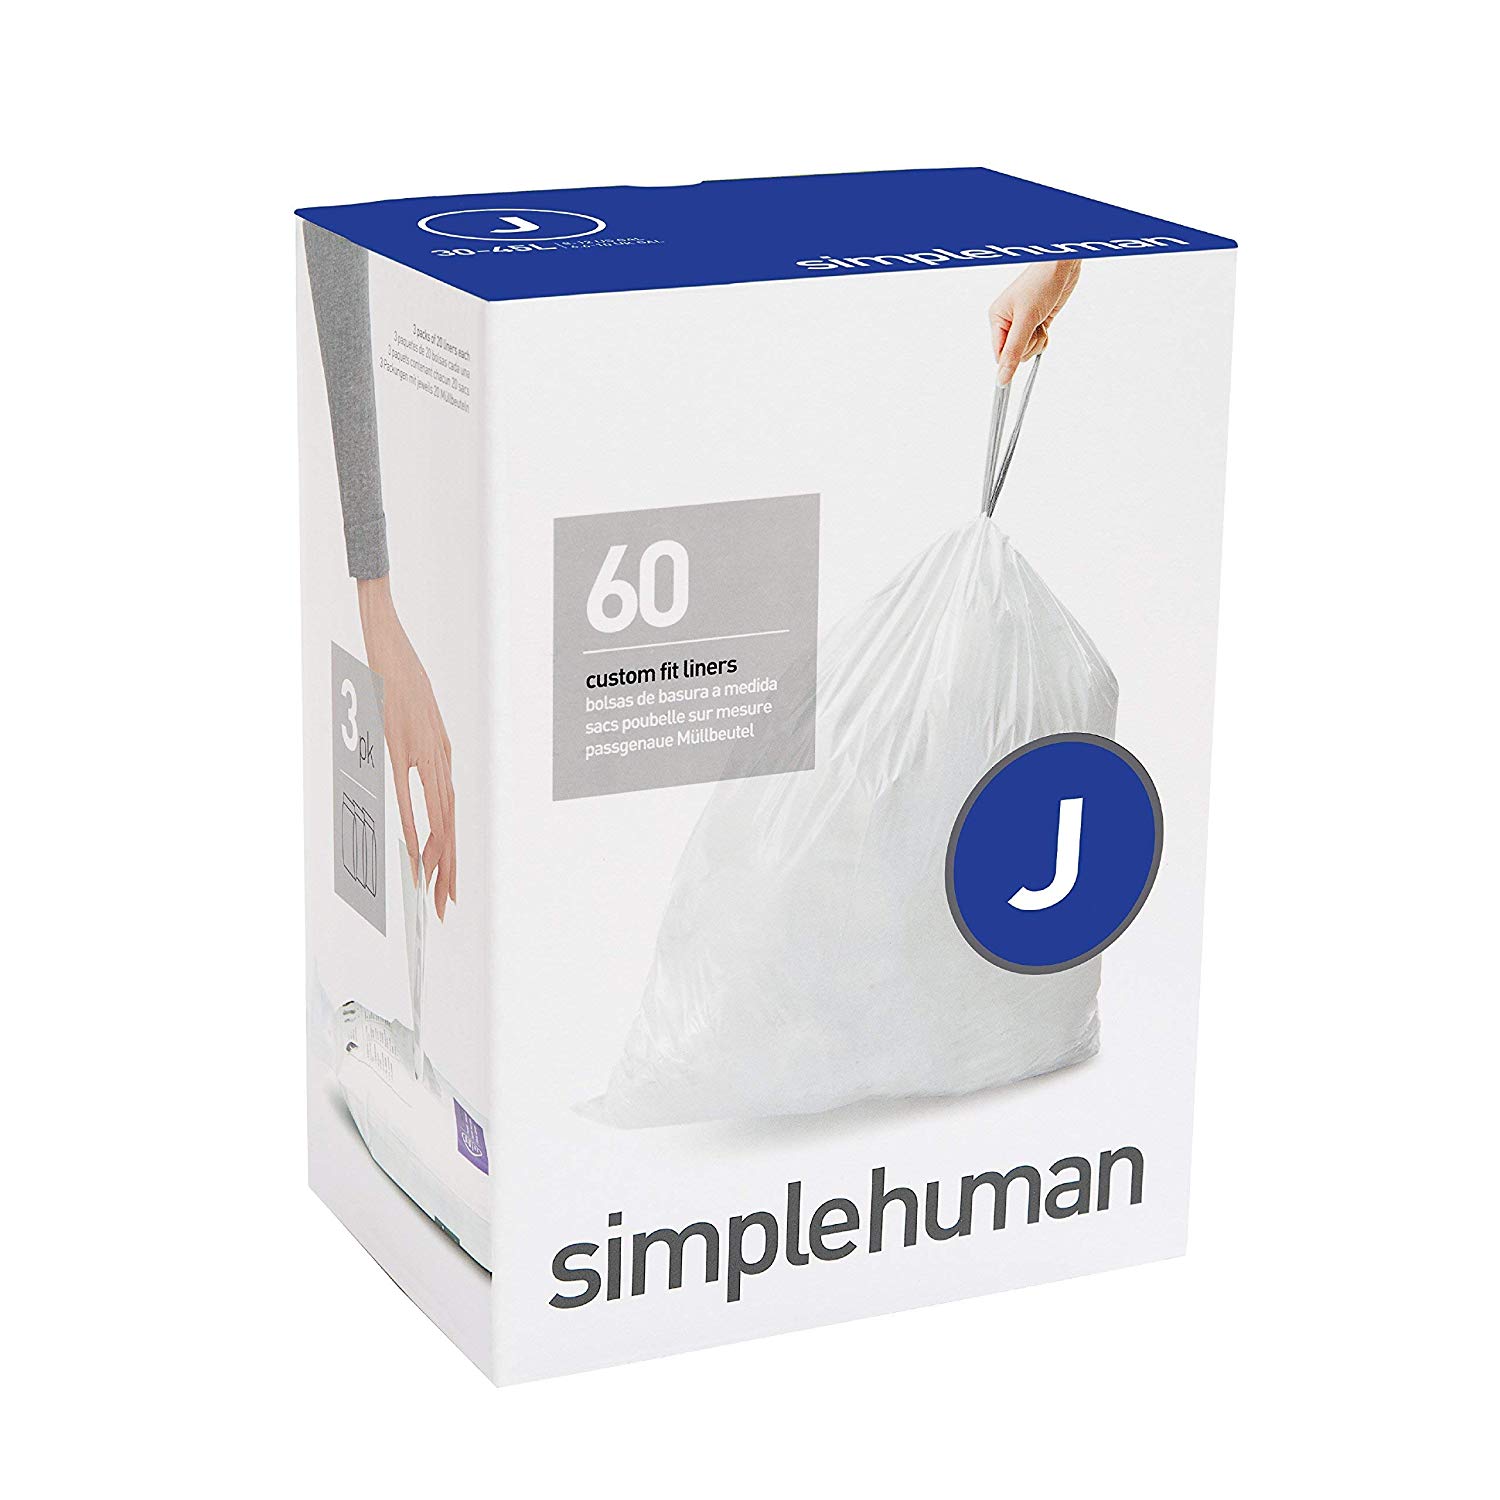 מארז 360 שקיות אשפה לפח 30-45 ליטר (J) דגם Simplehuman - CW0259 - סימפליומן